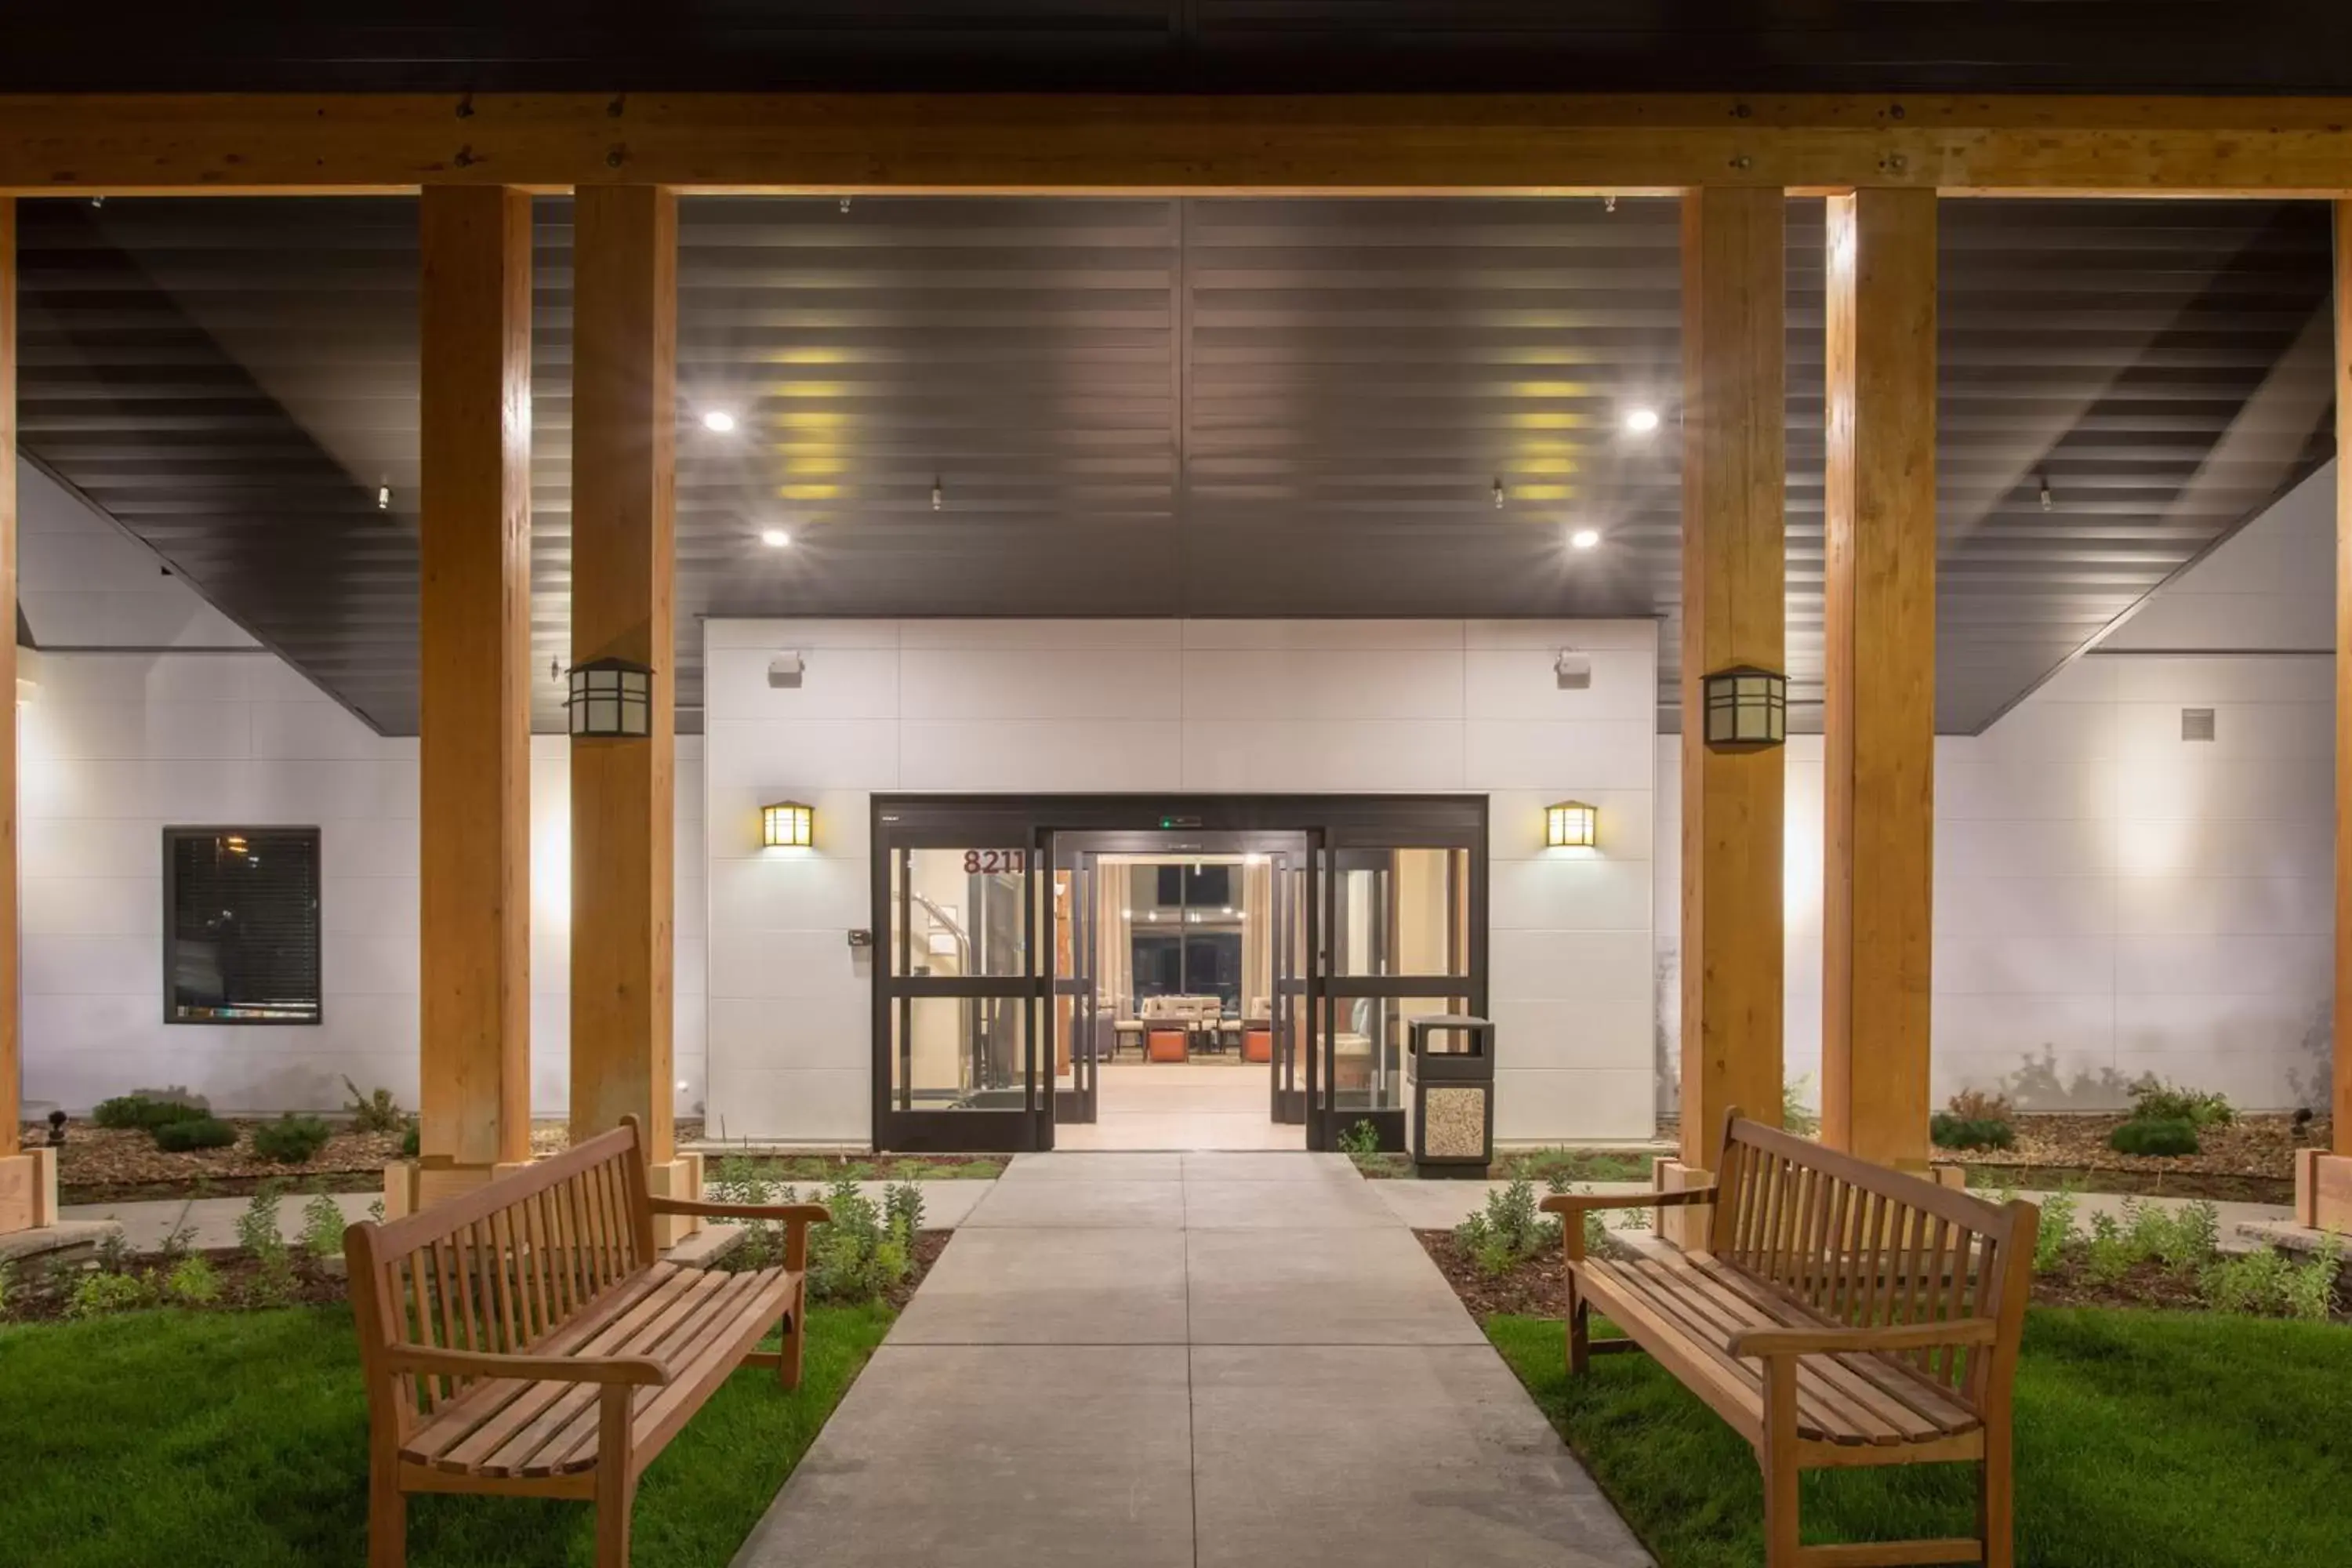 Property building in Staybridge Suites Denver South - Highlands Ranch, an IHG Hotel